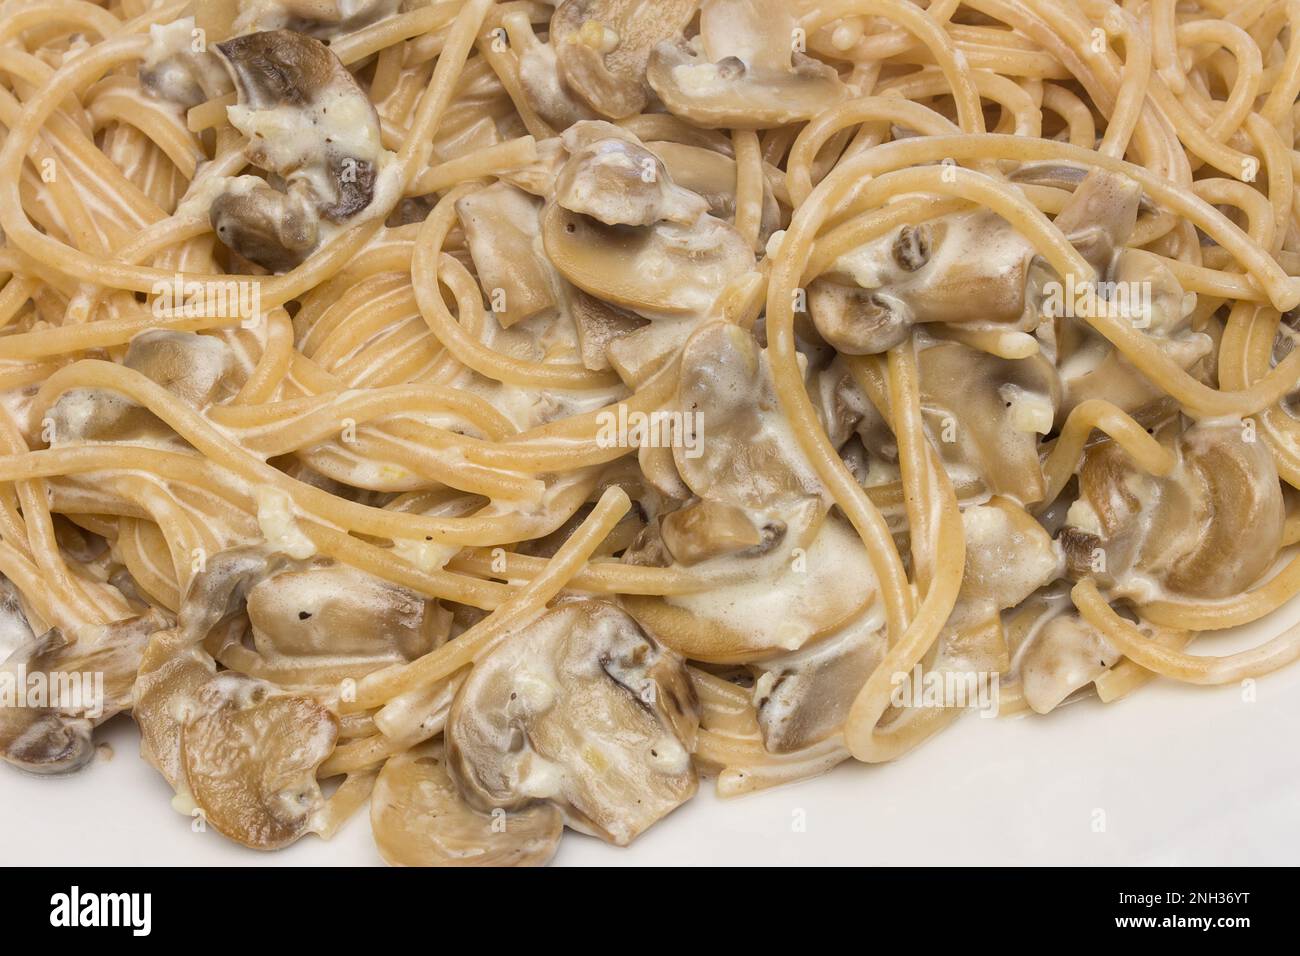 Gros plan d'une grande assiette de spaghetti juteux aux champignons, garnie d'herbes fraîches sur le dessus. Cuisine italienne et concept gastronomique. Banque D'Images